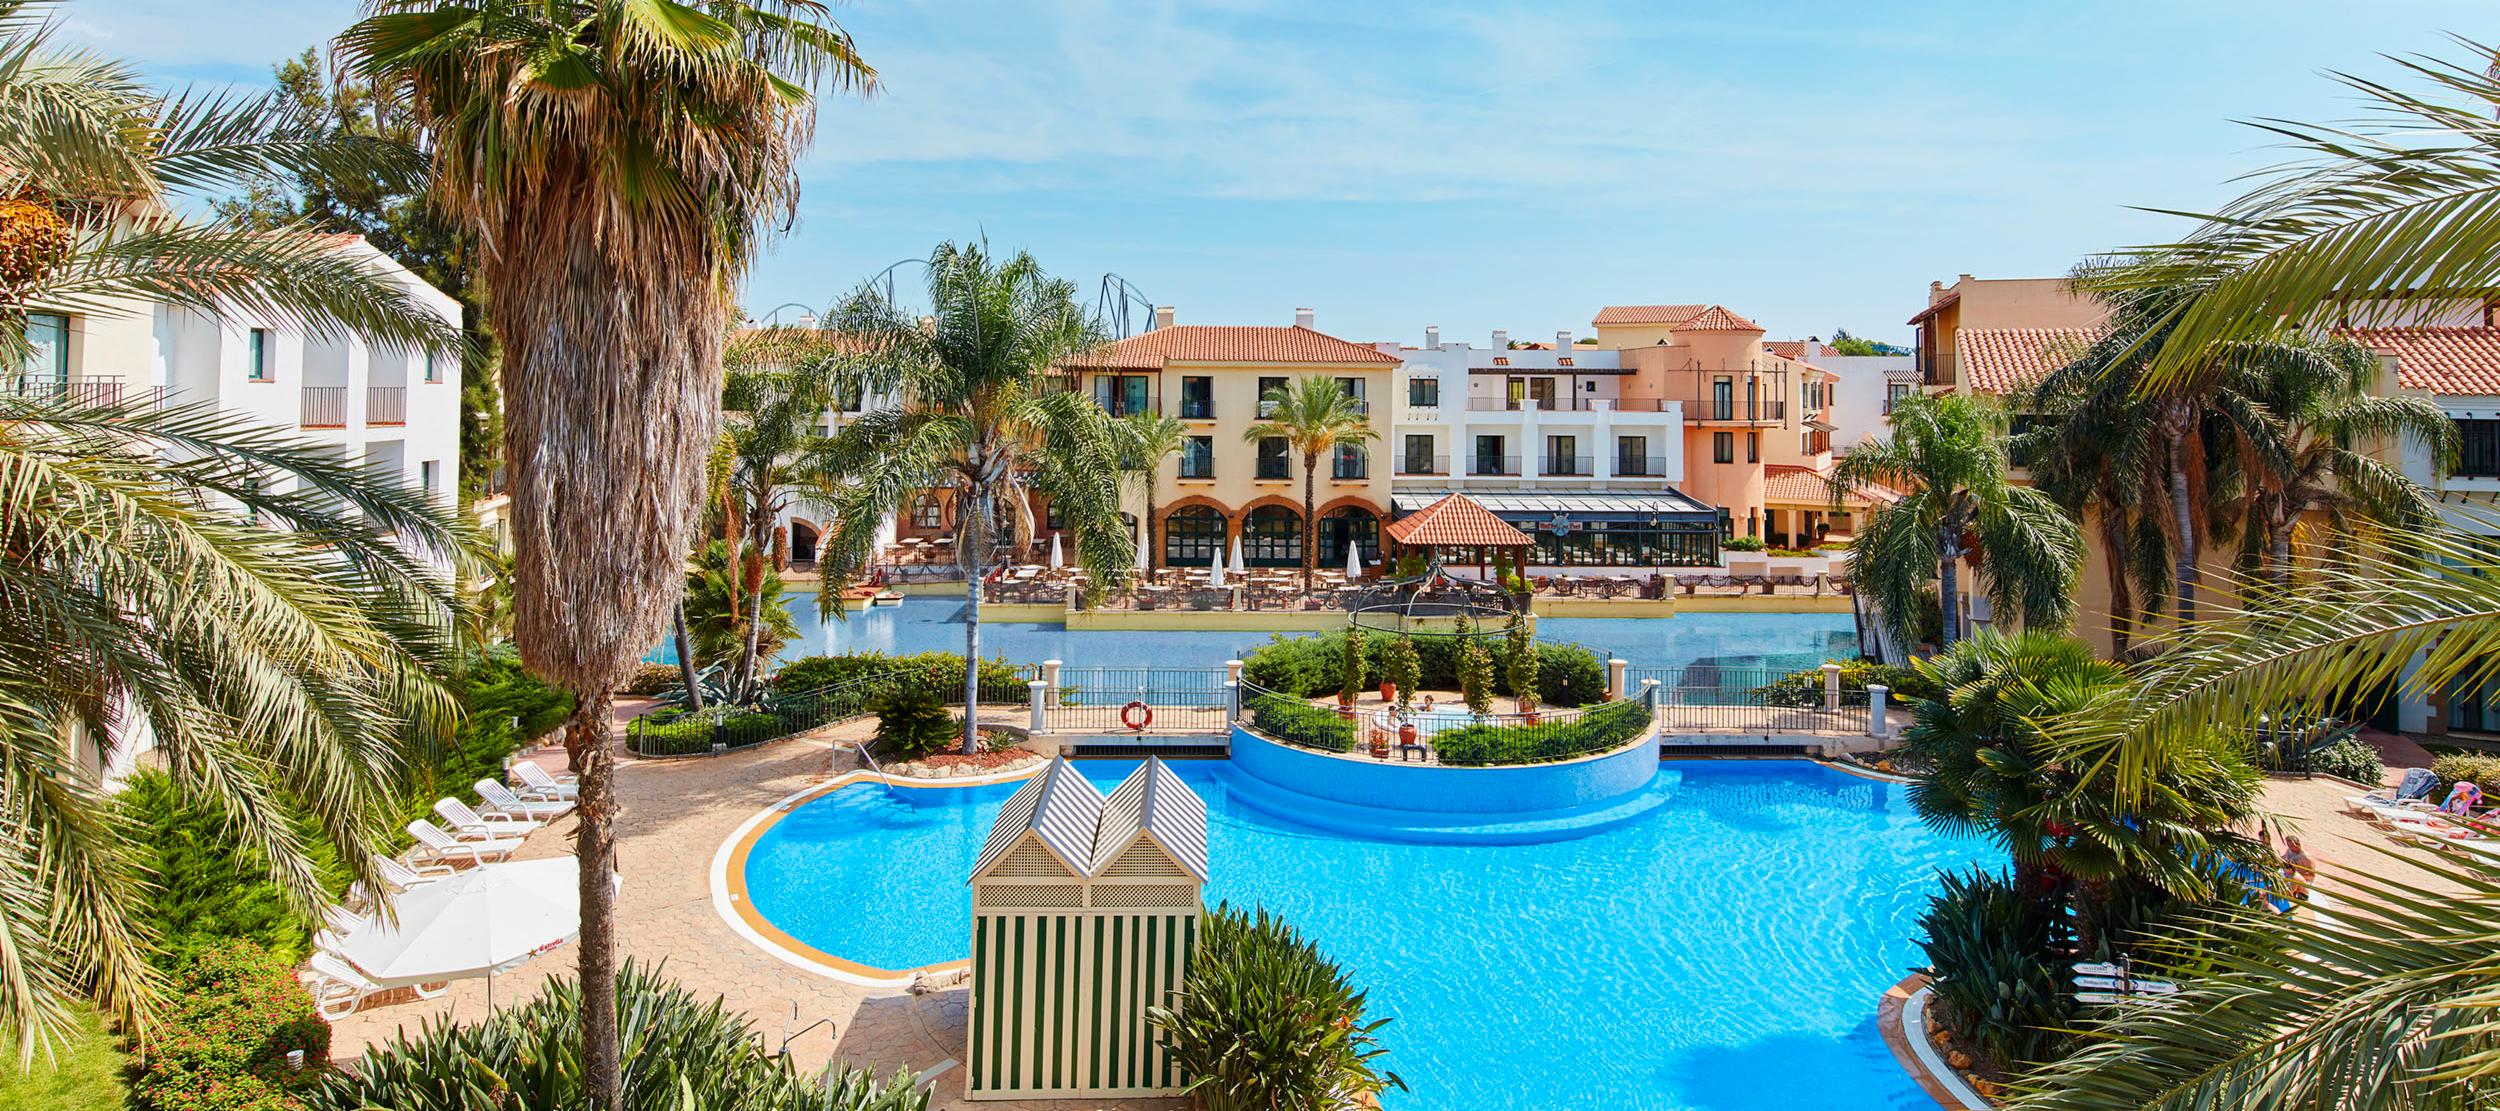 Hotel PortAventura in PortAventura World | Your Guide to PortAventura World